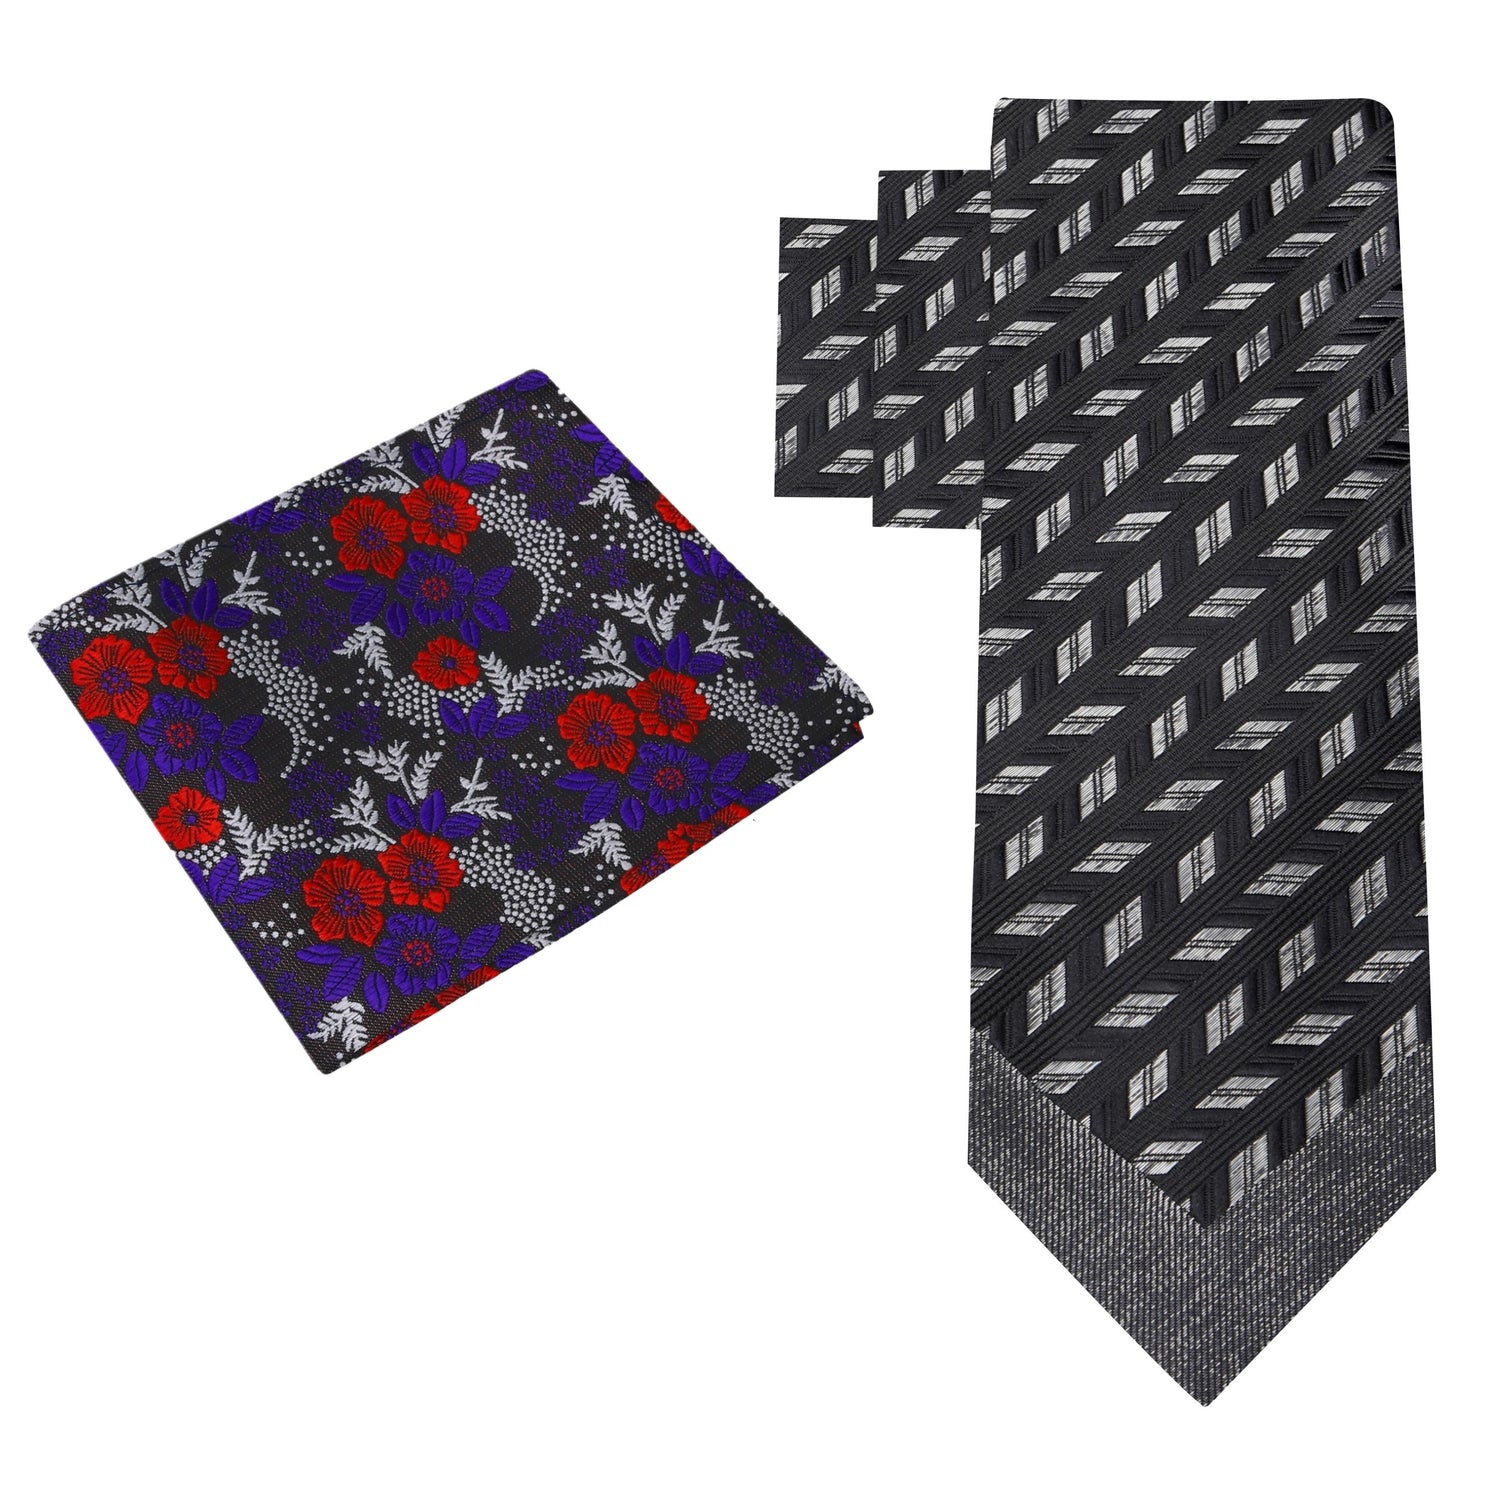 Alt View: Black, Charcoal Geometric Necktie & Black, Purple, Red Floral Square